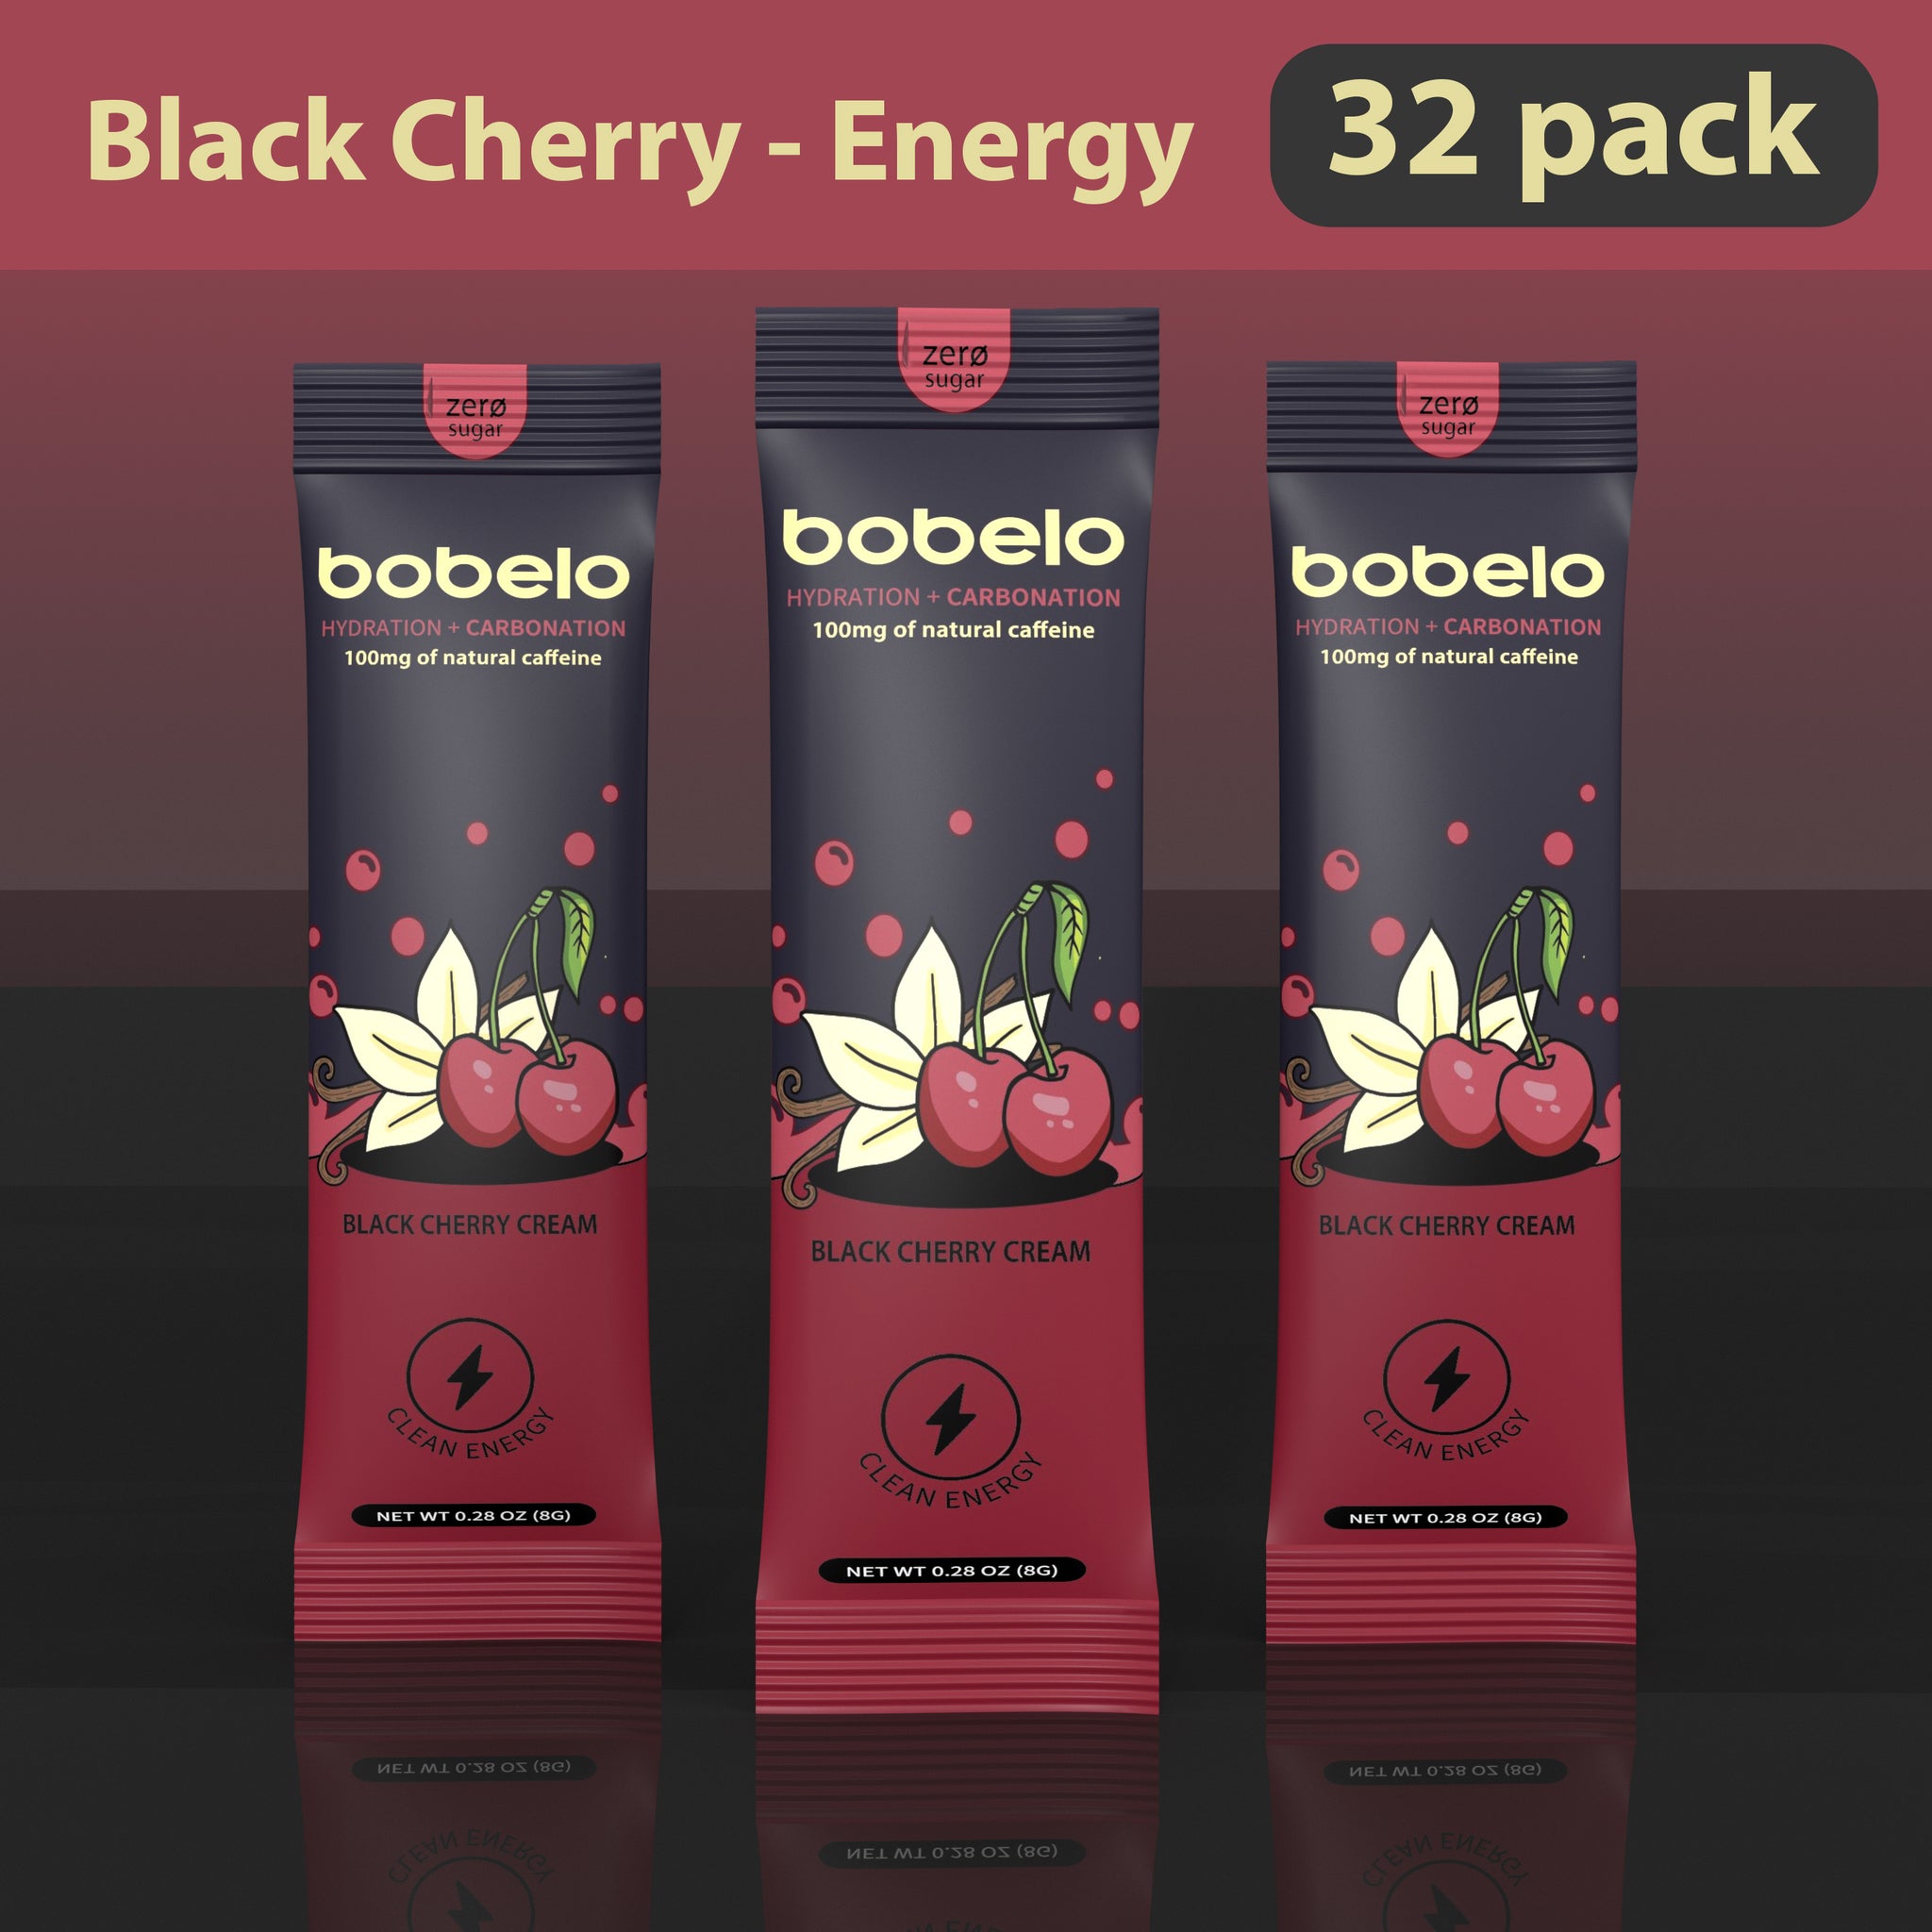 Black Cherry - Energy